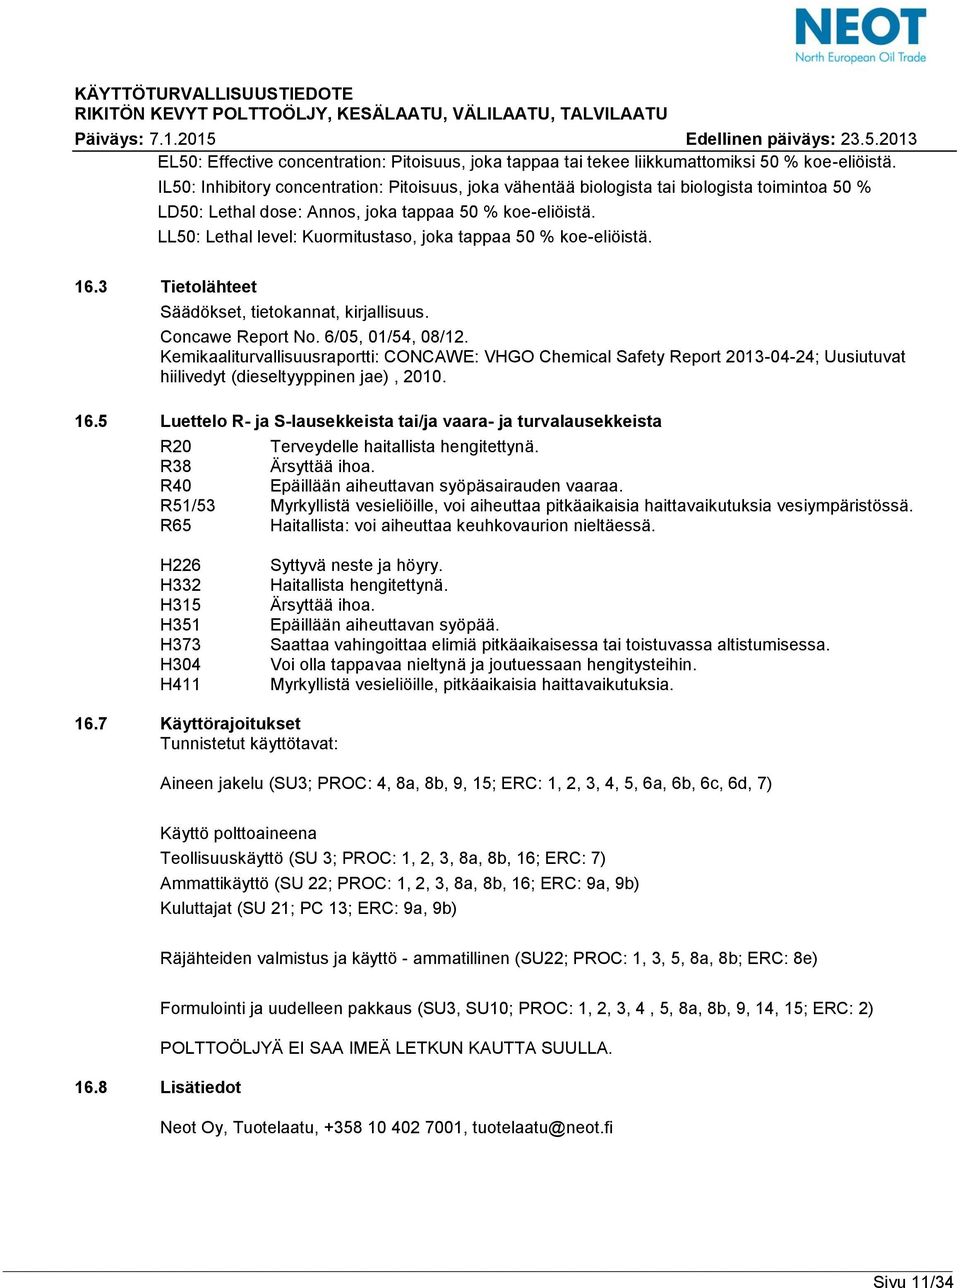 LL50: Lethal level: Kuormitustaso, joka tappaa 50 % koe-eliöistä. 16.3 Tietolähteet Säädökset, tietokannat, kirjallisuus. Concawe Report No. 6/05, 01/54, 08/12.